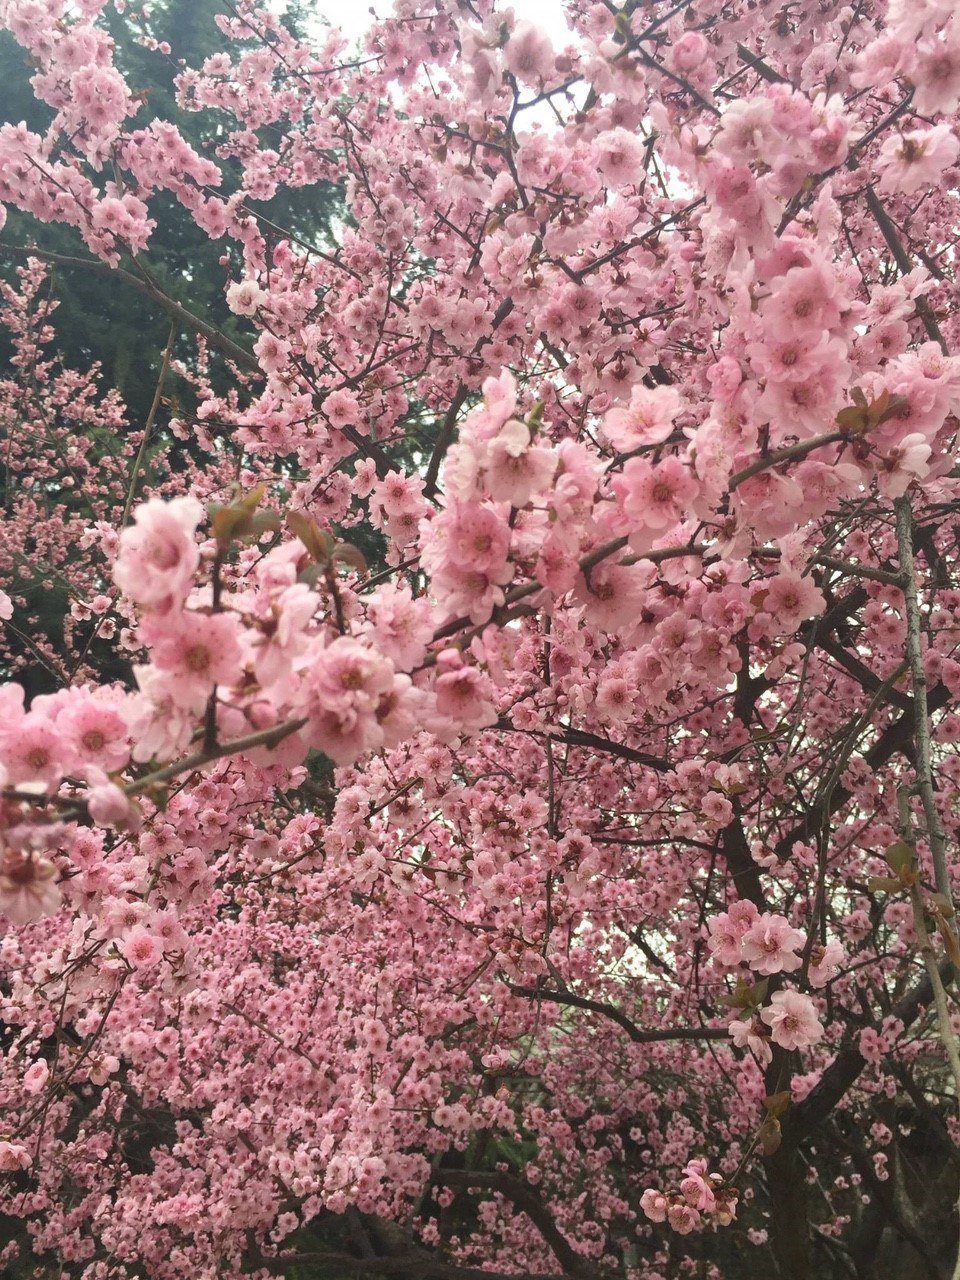 Kawazu Cherry Blossom Festival by Travelgal